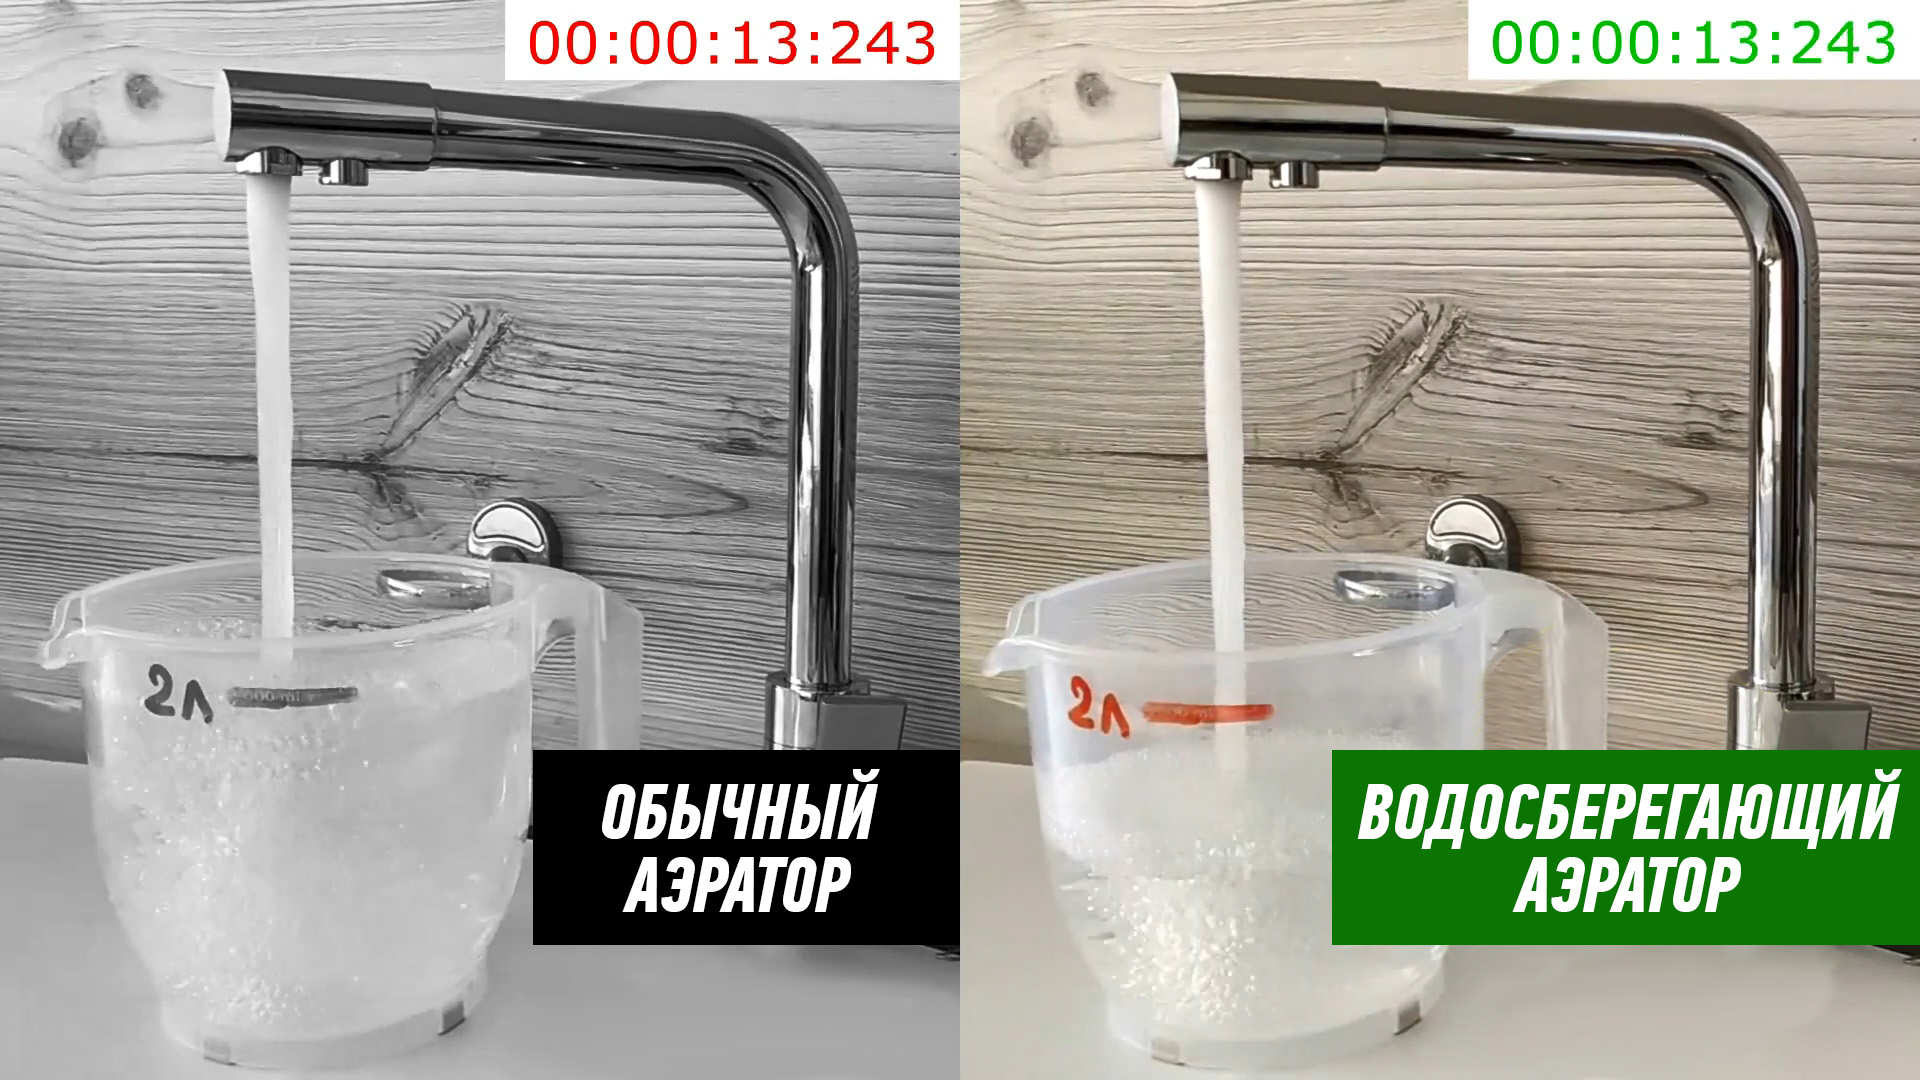 Наглядно демонстрируется на видео, что стандартный смеситель с обычным аэратором (первого поколения) набирает 2 литра воды за 13 секунд, смеситель 2.0 — за 24 секунды. Соответственно, расход воды у смесителя 2.0 — почти в два раза меньше.